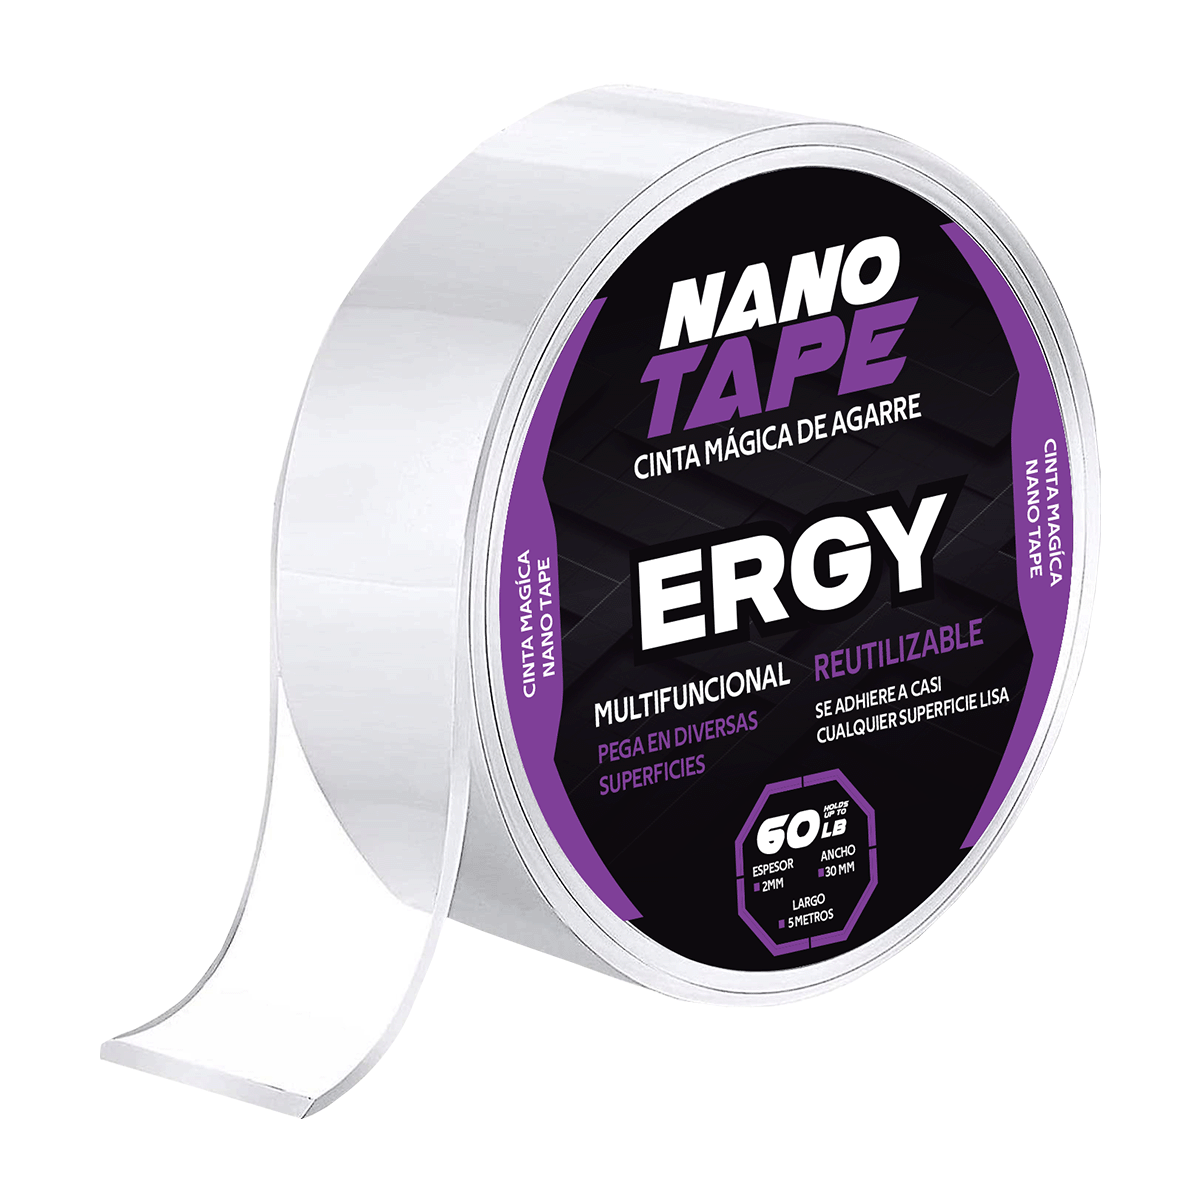 Una nueva ocurrencia para hacer con la cinta nano tape #pongamosloapru